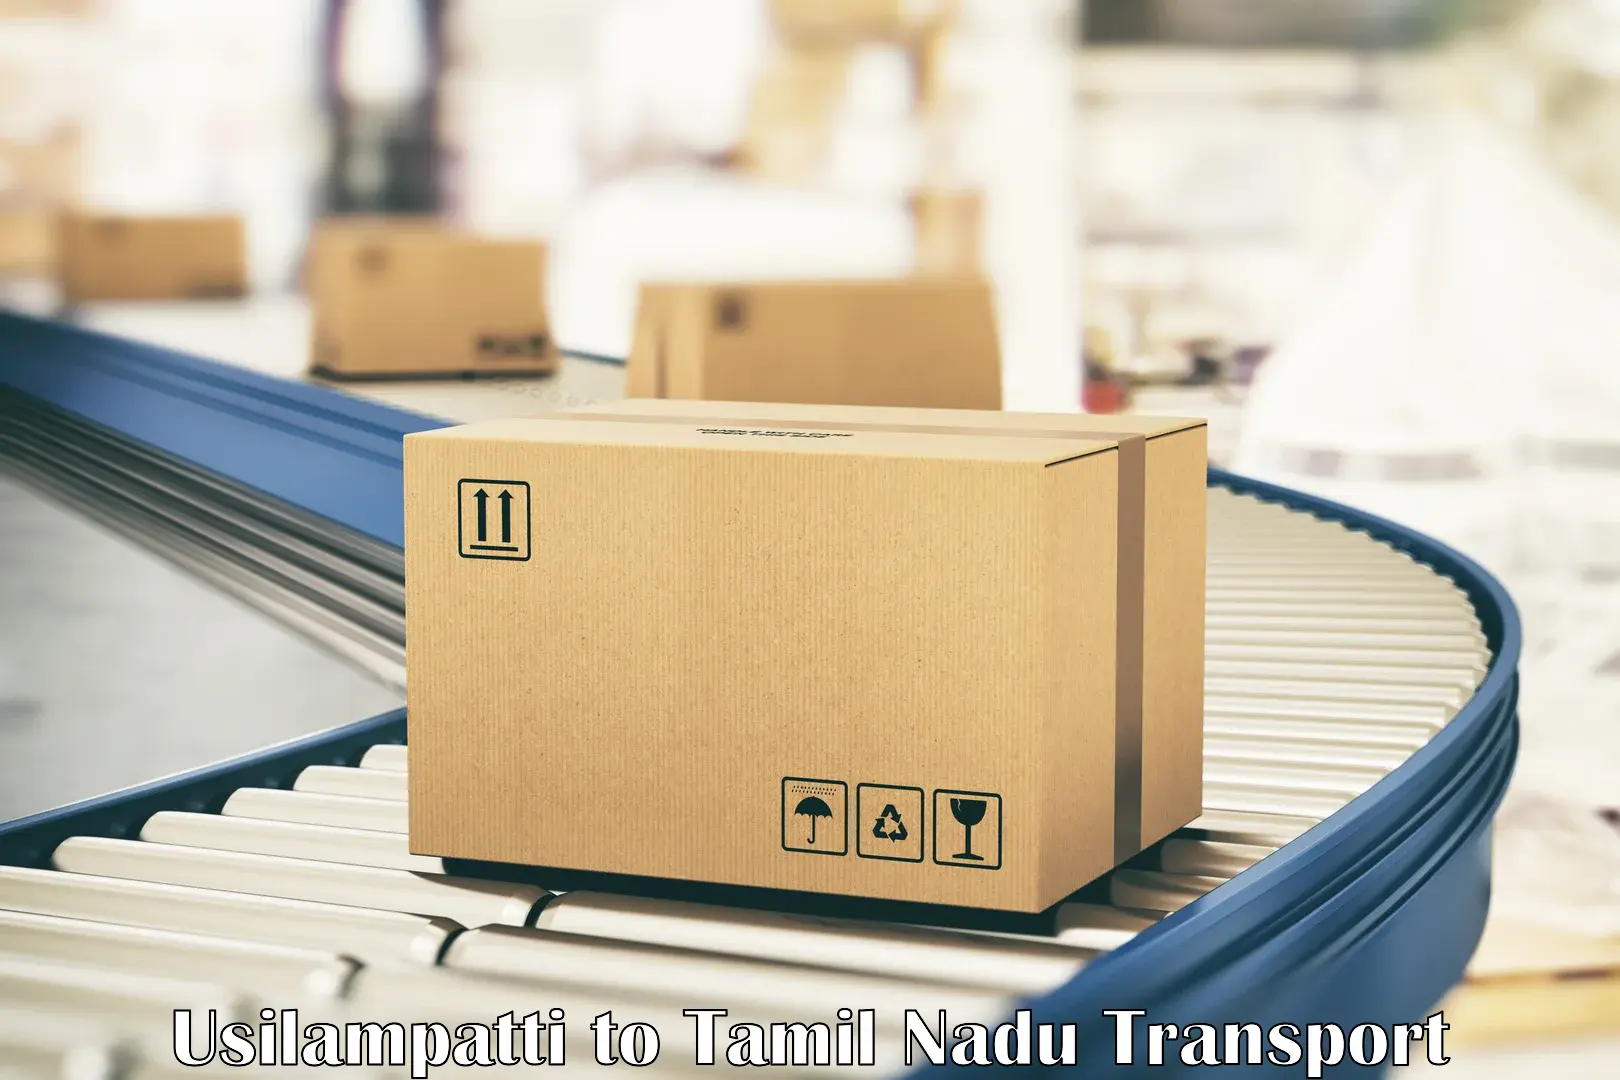 Domestic goods transportation services Usilampatti to Chennai